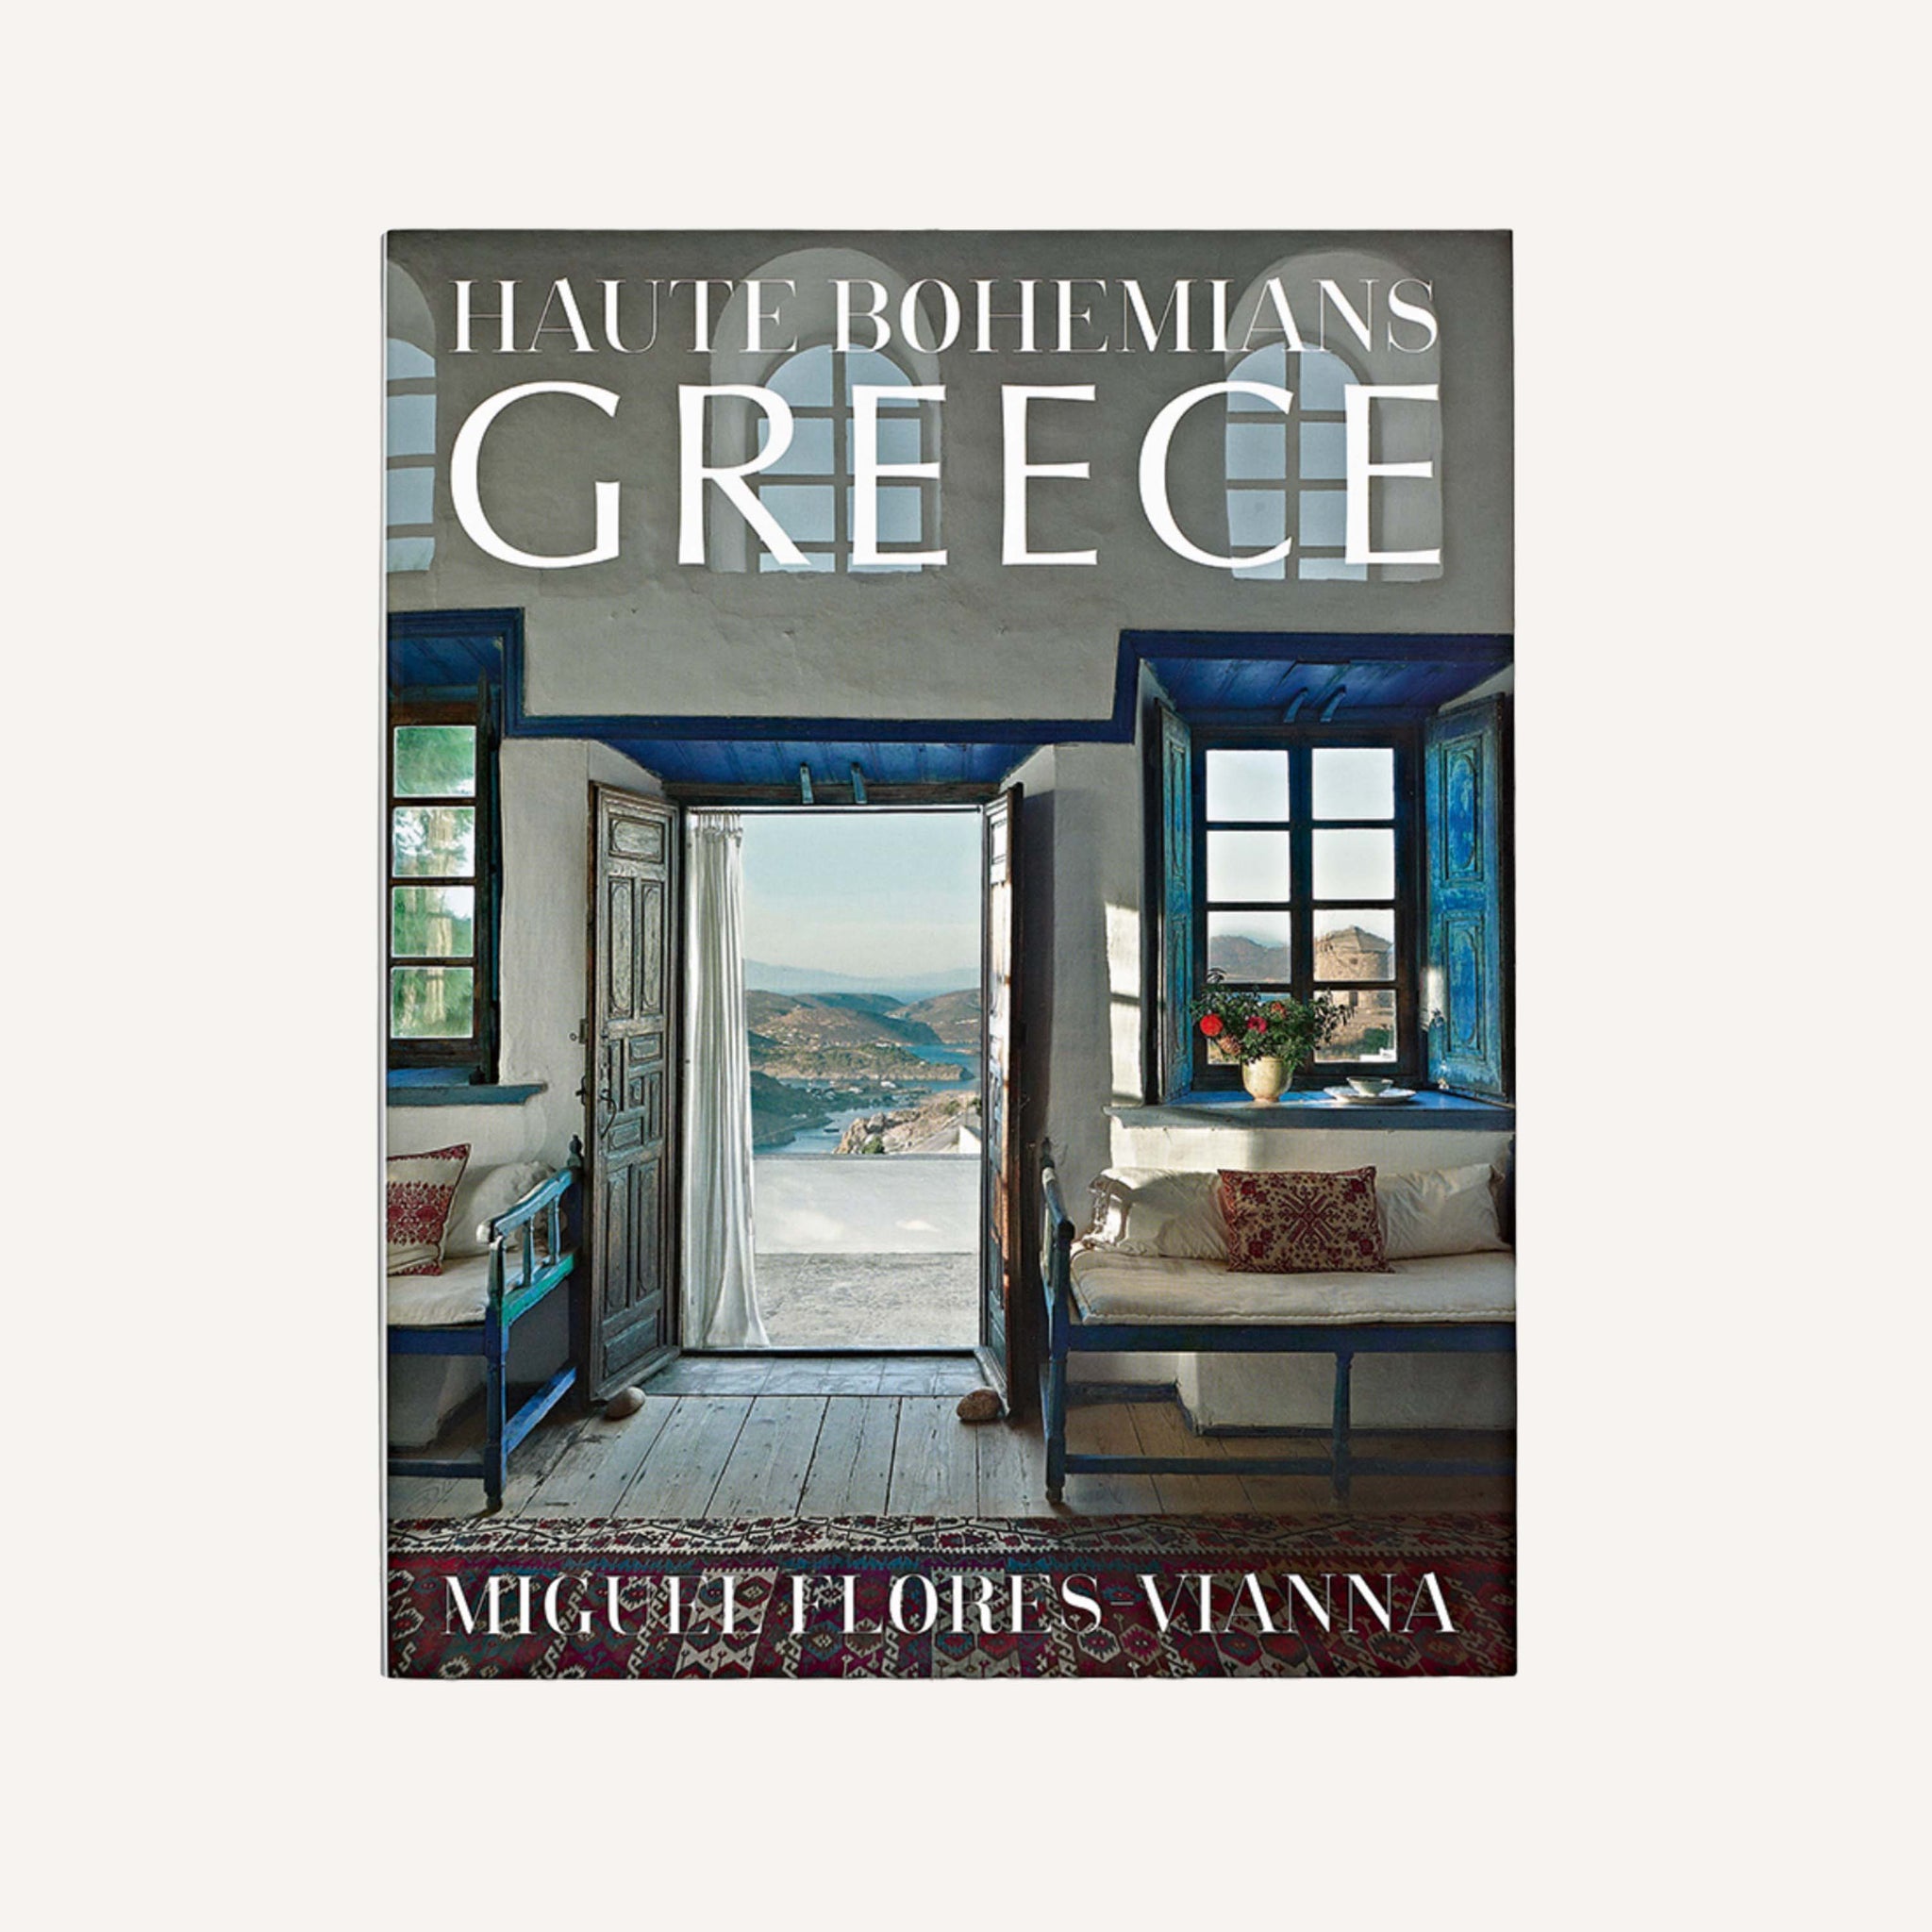 HAUTE BOHEMIANS GREECE, BY MIGUEL FLORES VIANNA